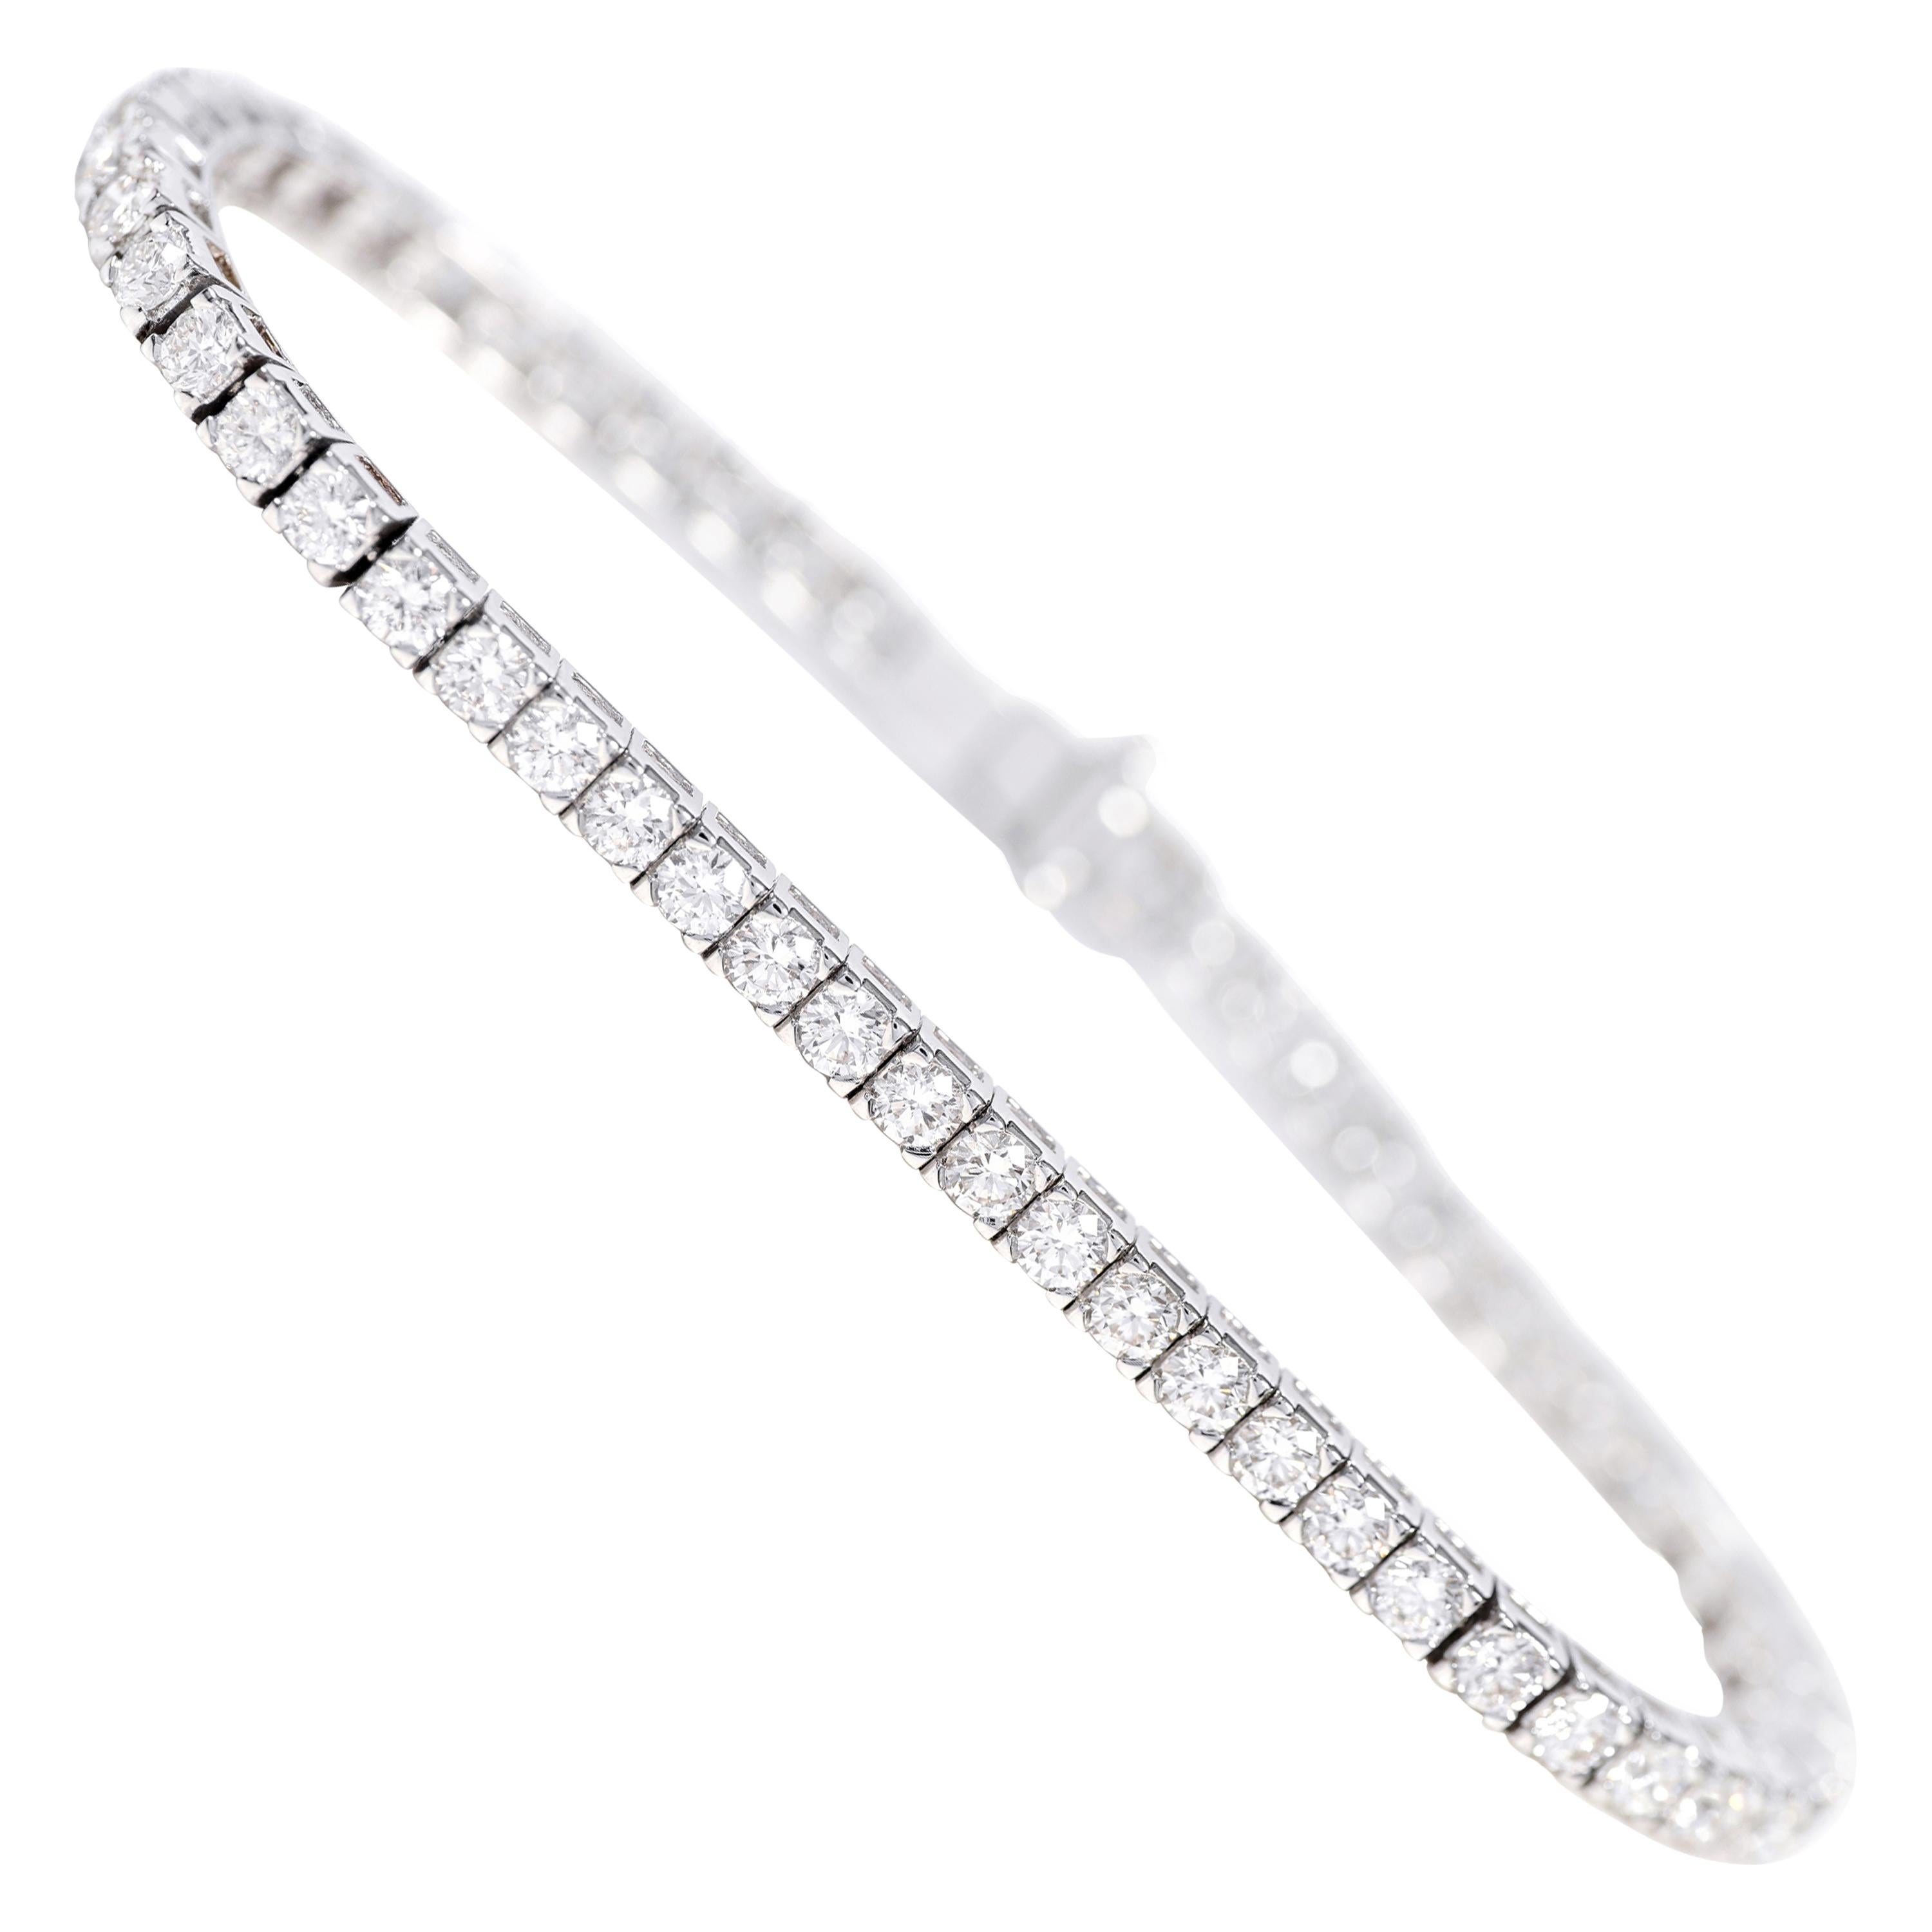 Bracelet tennis moderne en or blanc 18 carats avec diamants taille brillant de 5,14 carats